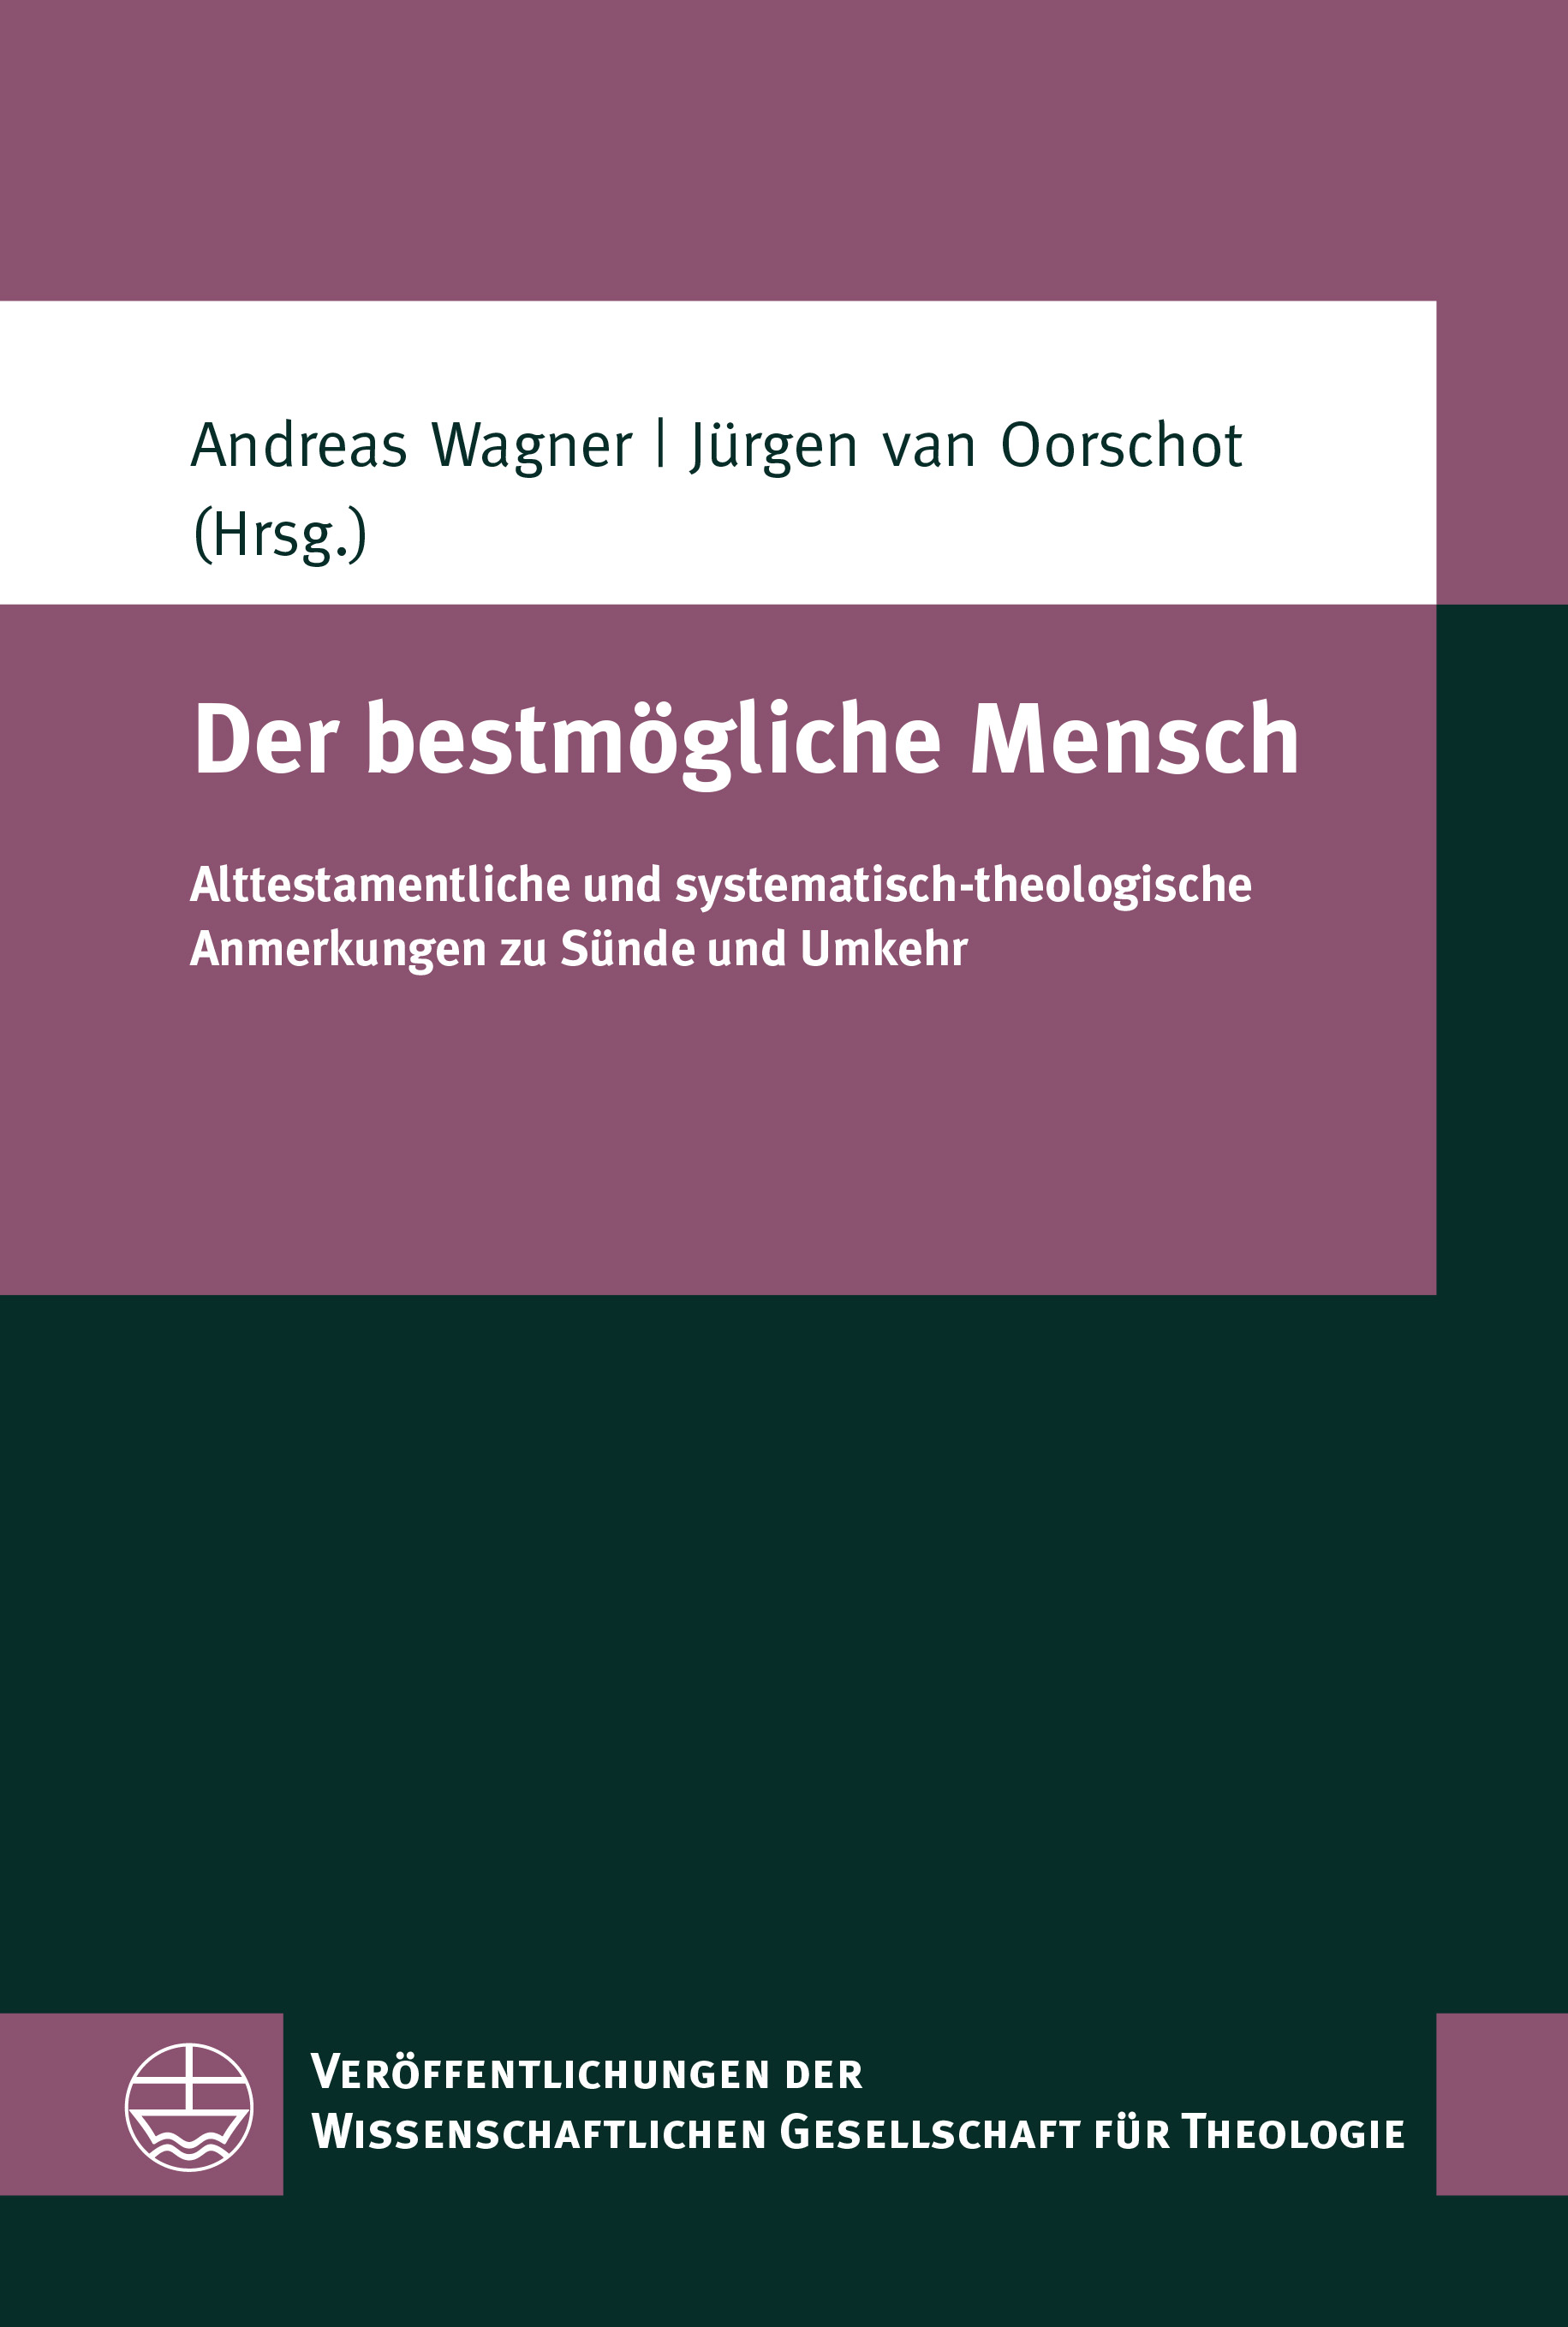 eva cover 07121 VWGTh 67 Wagner Oorschot Der bestmoegliche Mensch